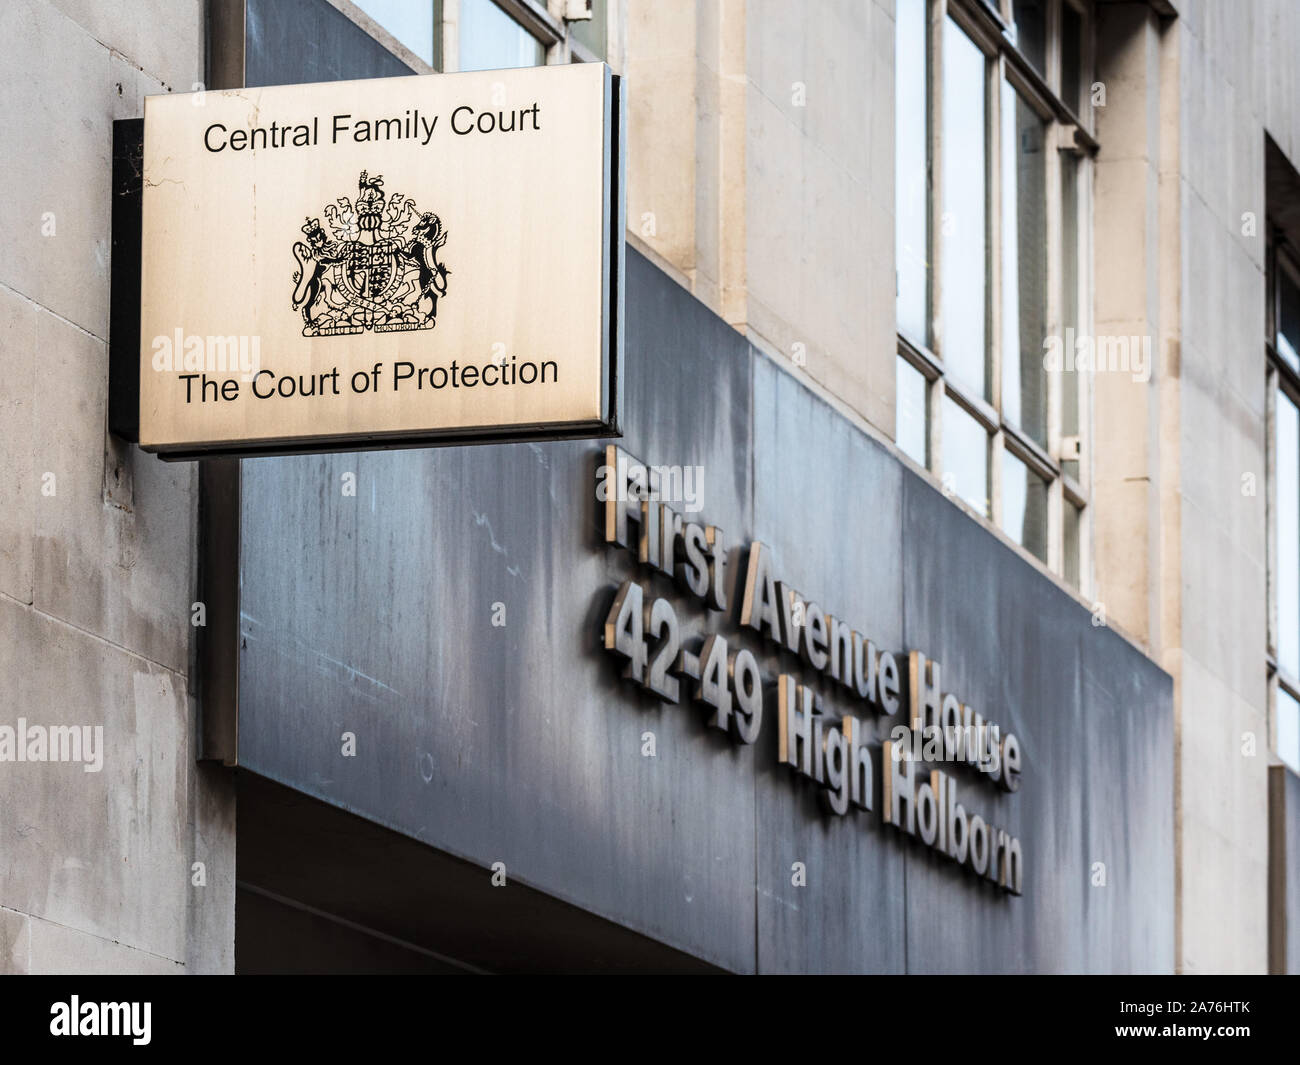 Zentrale Familie Gerichtshof und Gericht Schutz in High Holborn London - Central London Familiengerichte Stockfoto